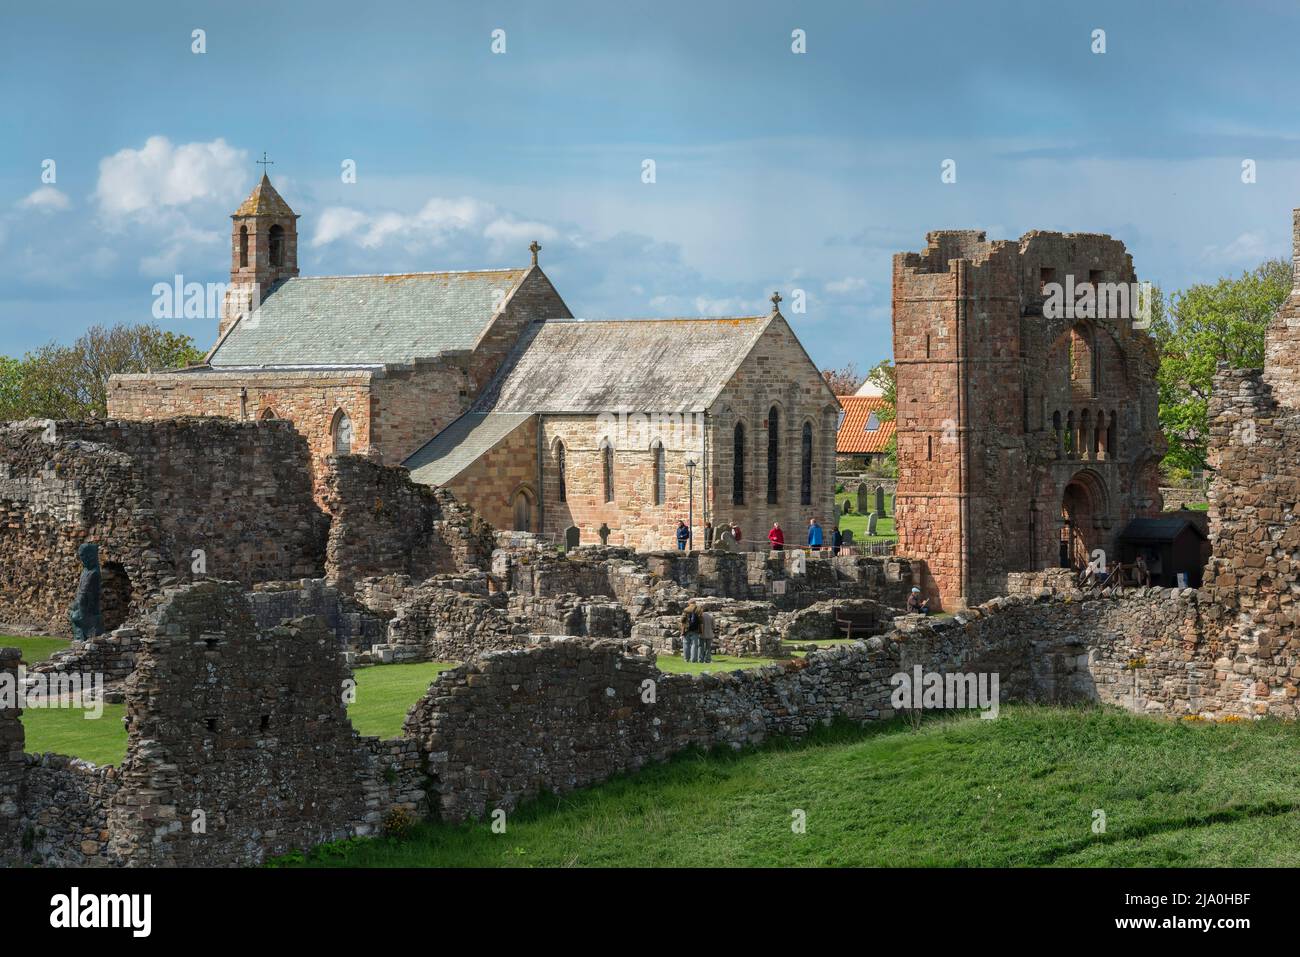 Priory Lindisfarne, Blick auf einen Teil der Ruinen des Priory Lindisfarne mit der Pfarrkirche St. Mary's innerhalb seiner Mauern, Holy Island, Northumberland Stockfoto